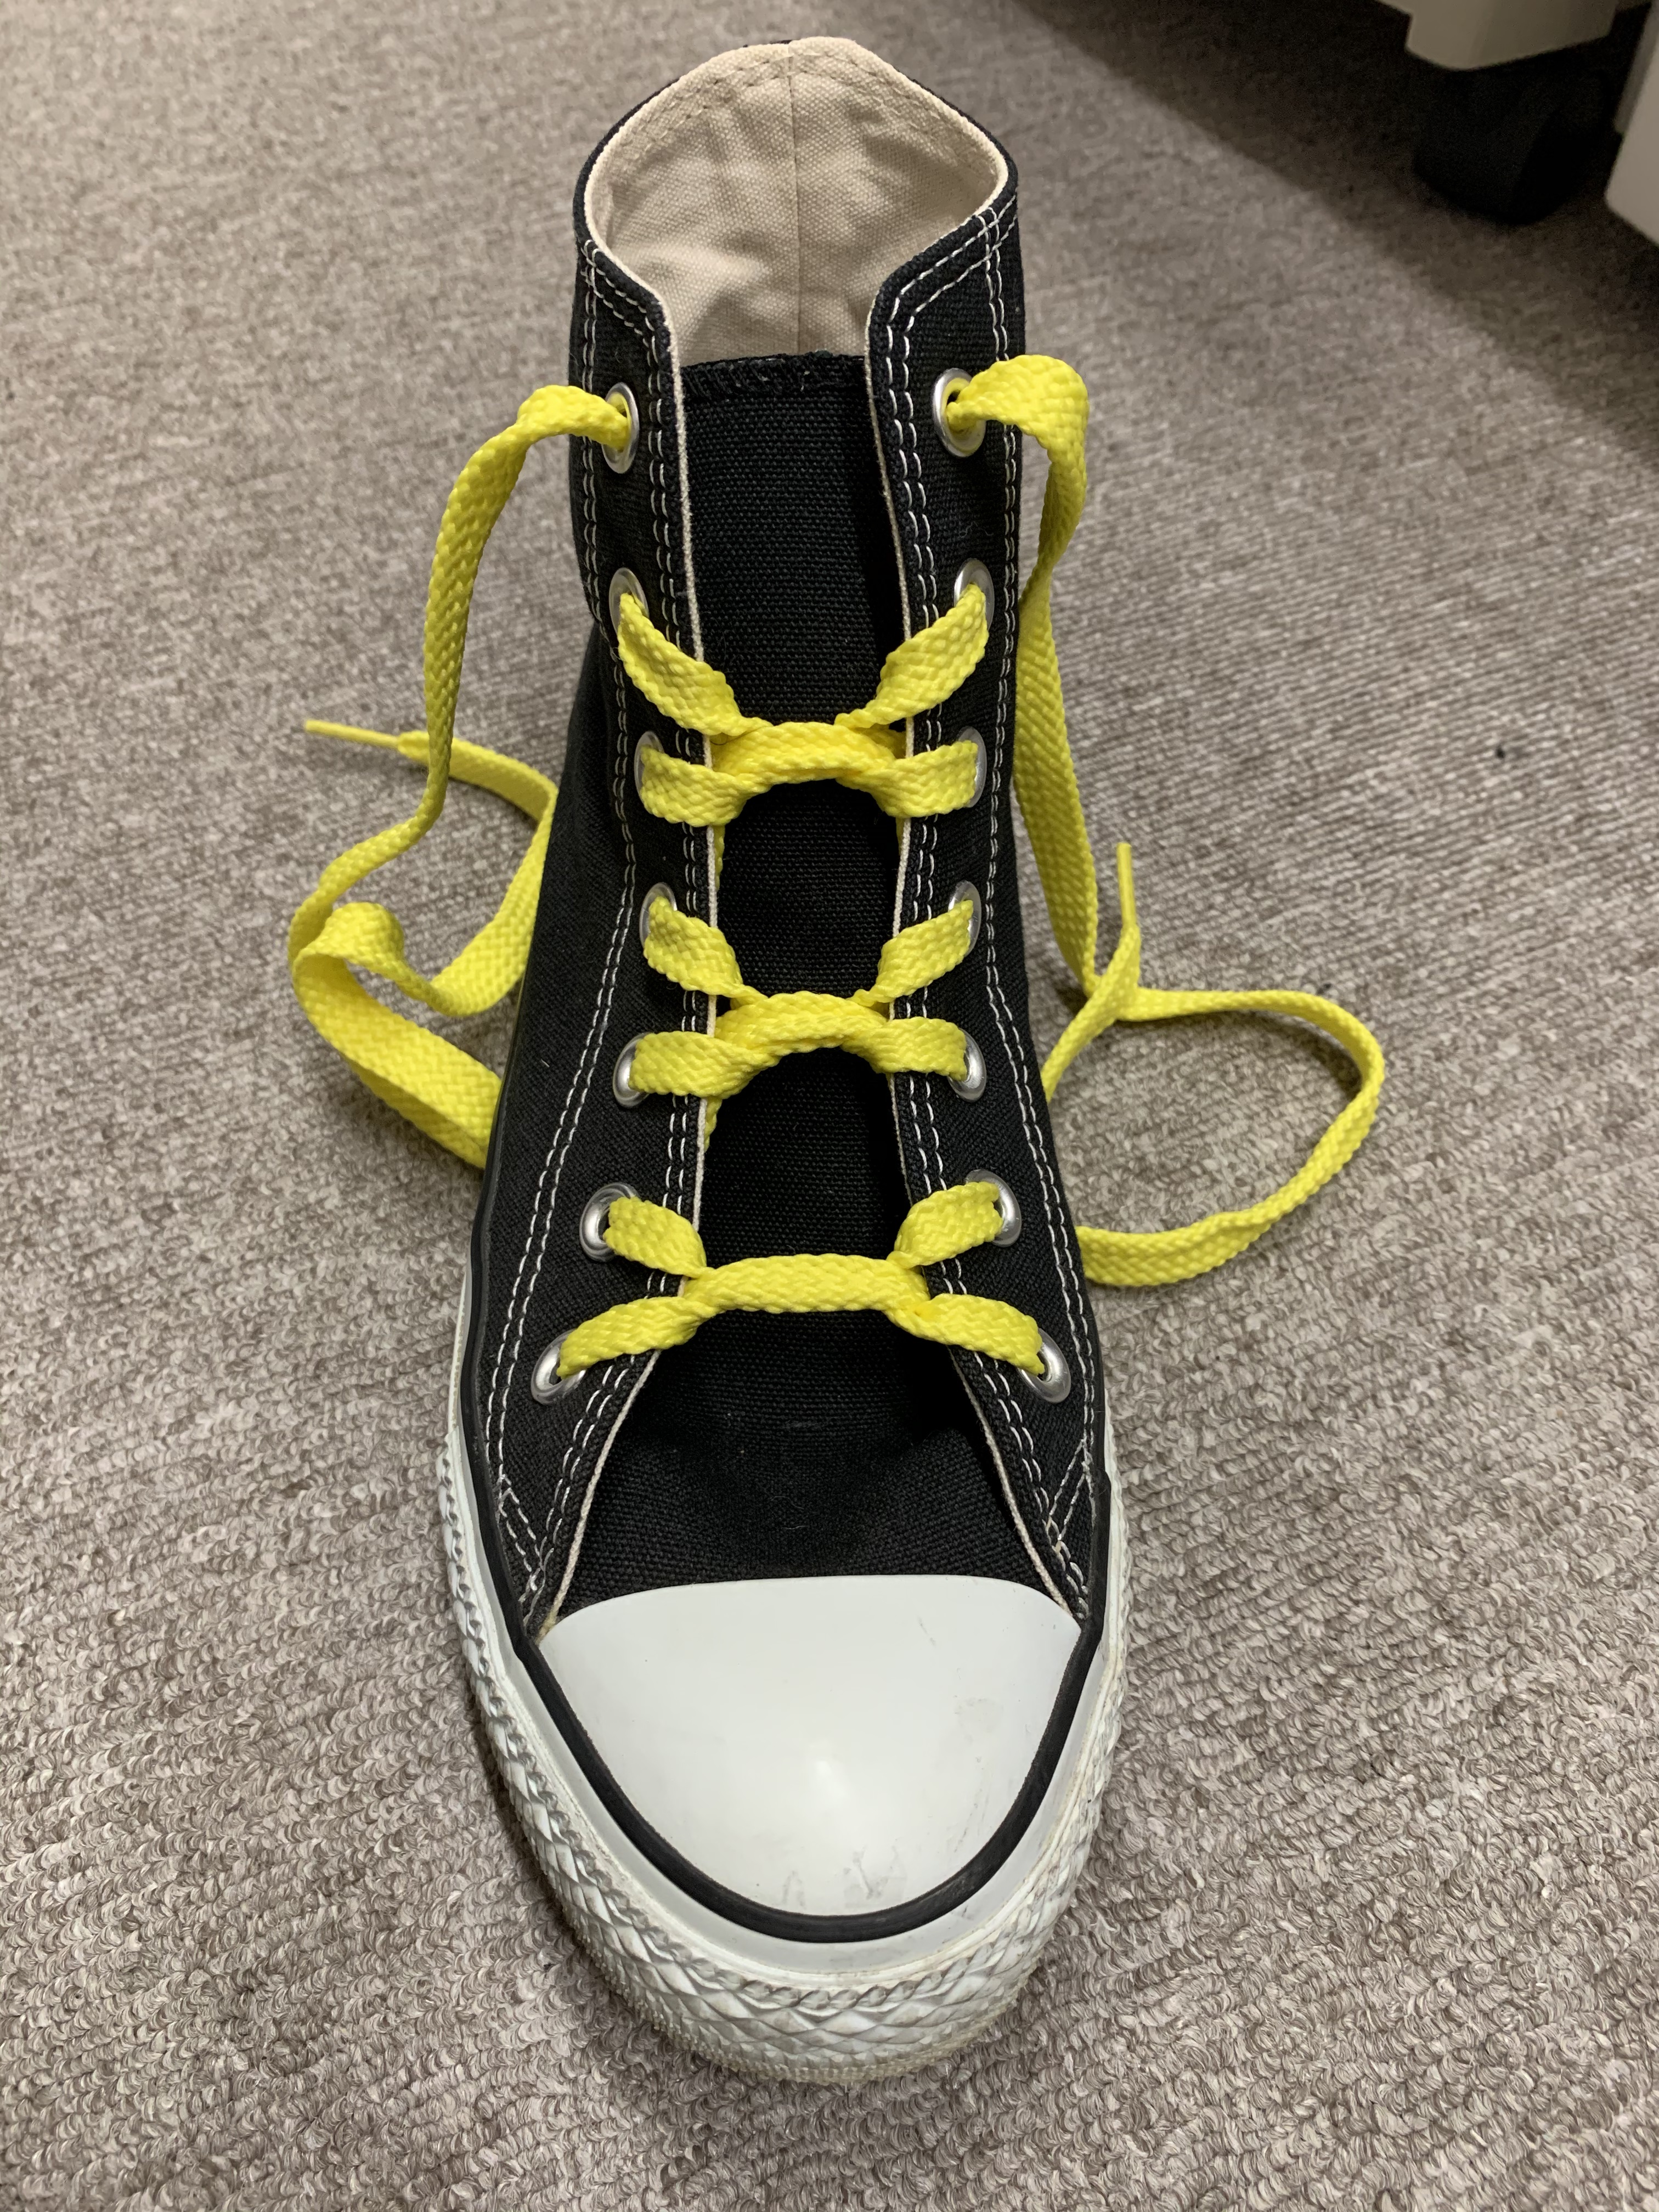 かっこいい靴紐の結び方 R Eブログ アール イー オオノ有限会社